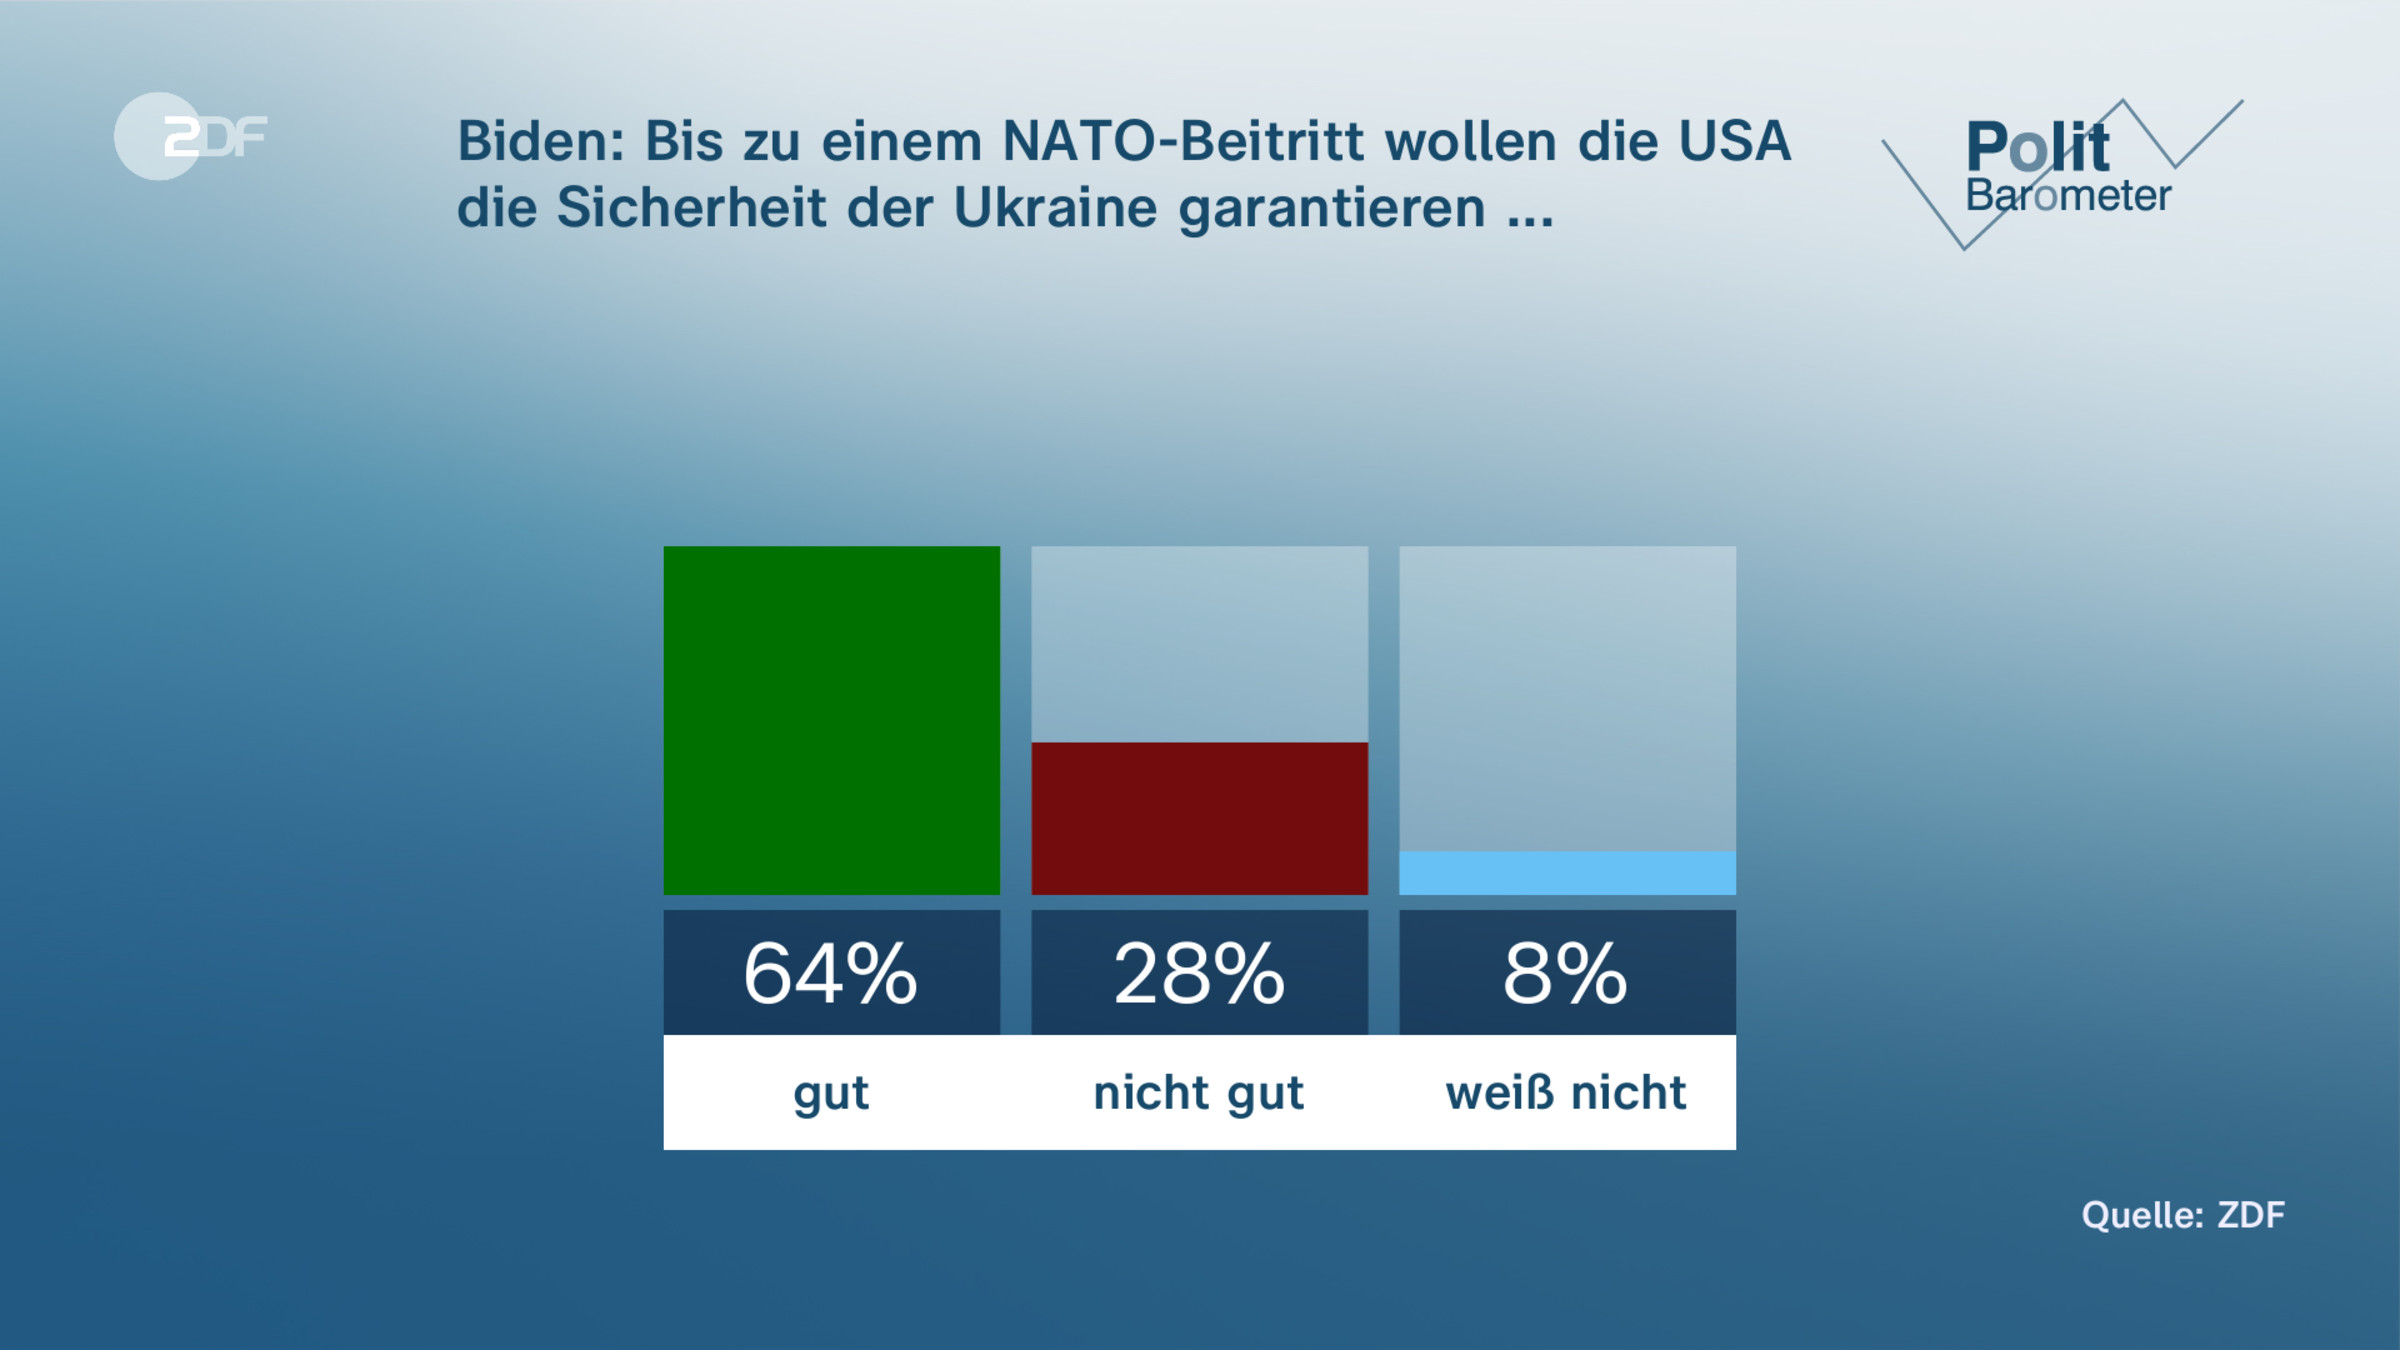 Biden: Bis zu einem NATO-Beitritt wollen die USA die Sicherheit der Ukraine garantieren ...